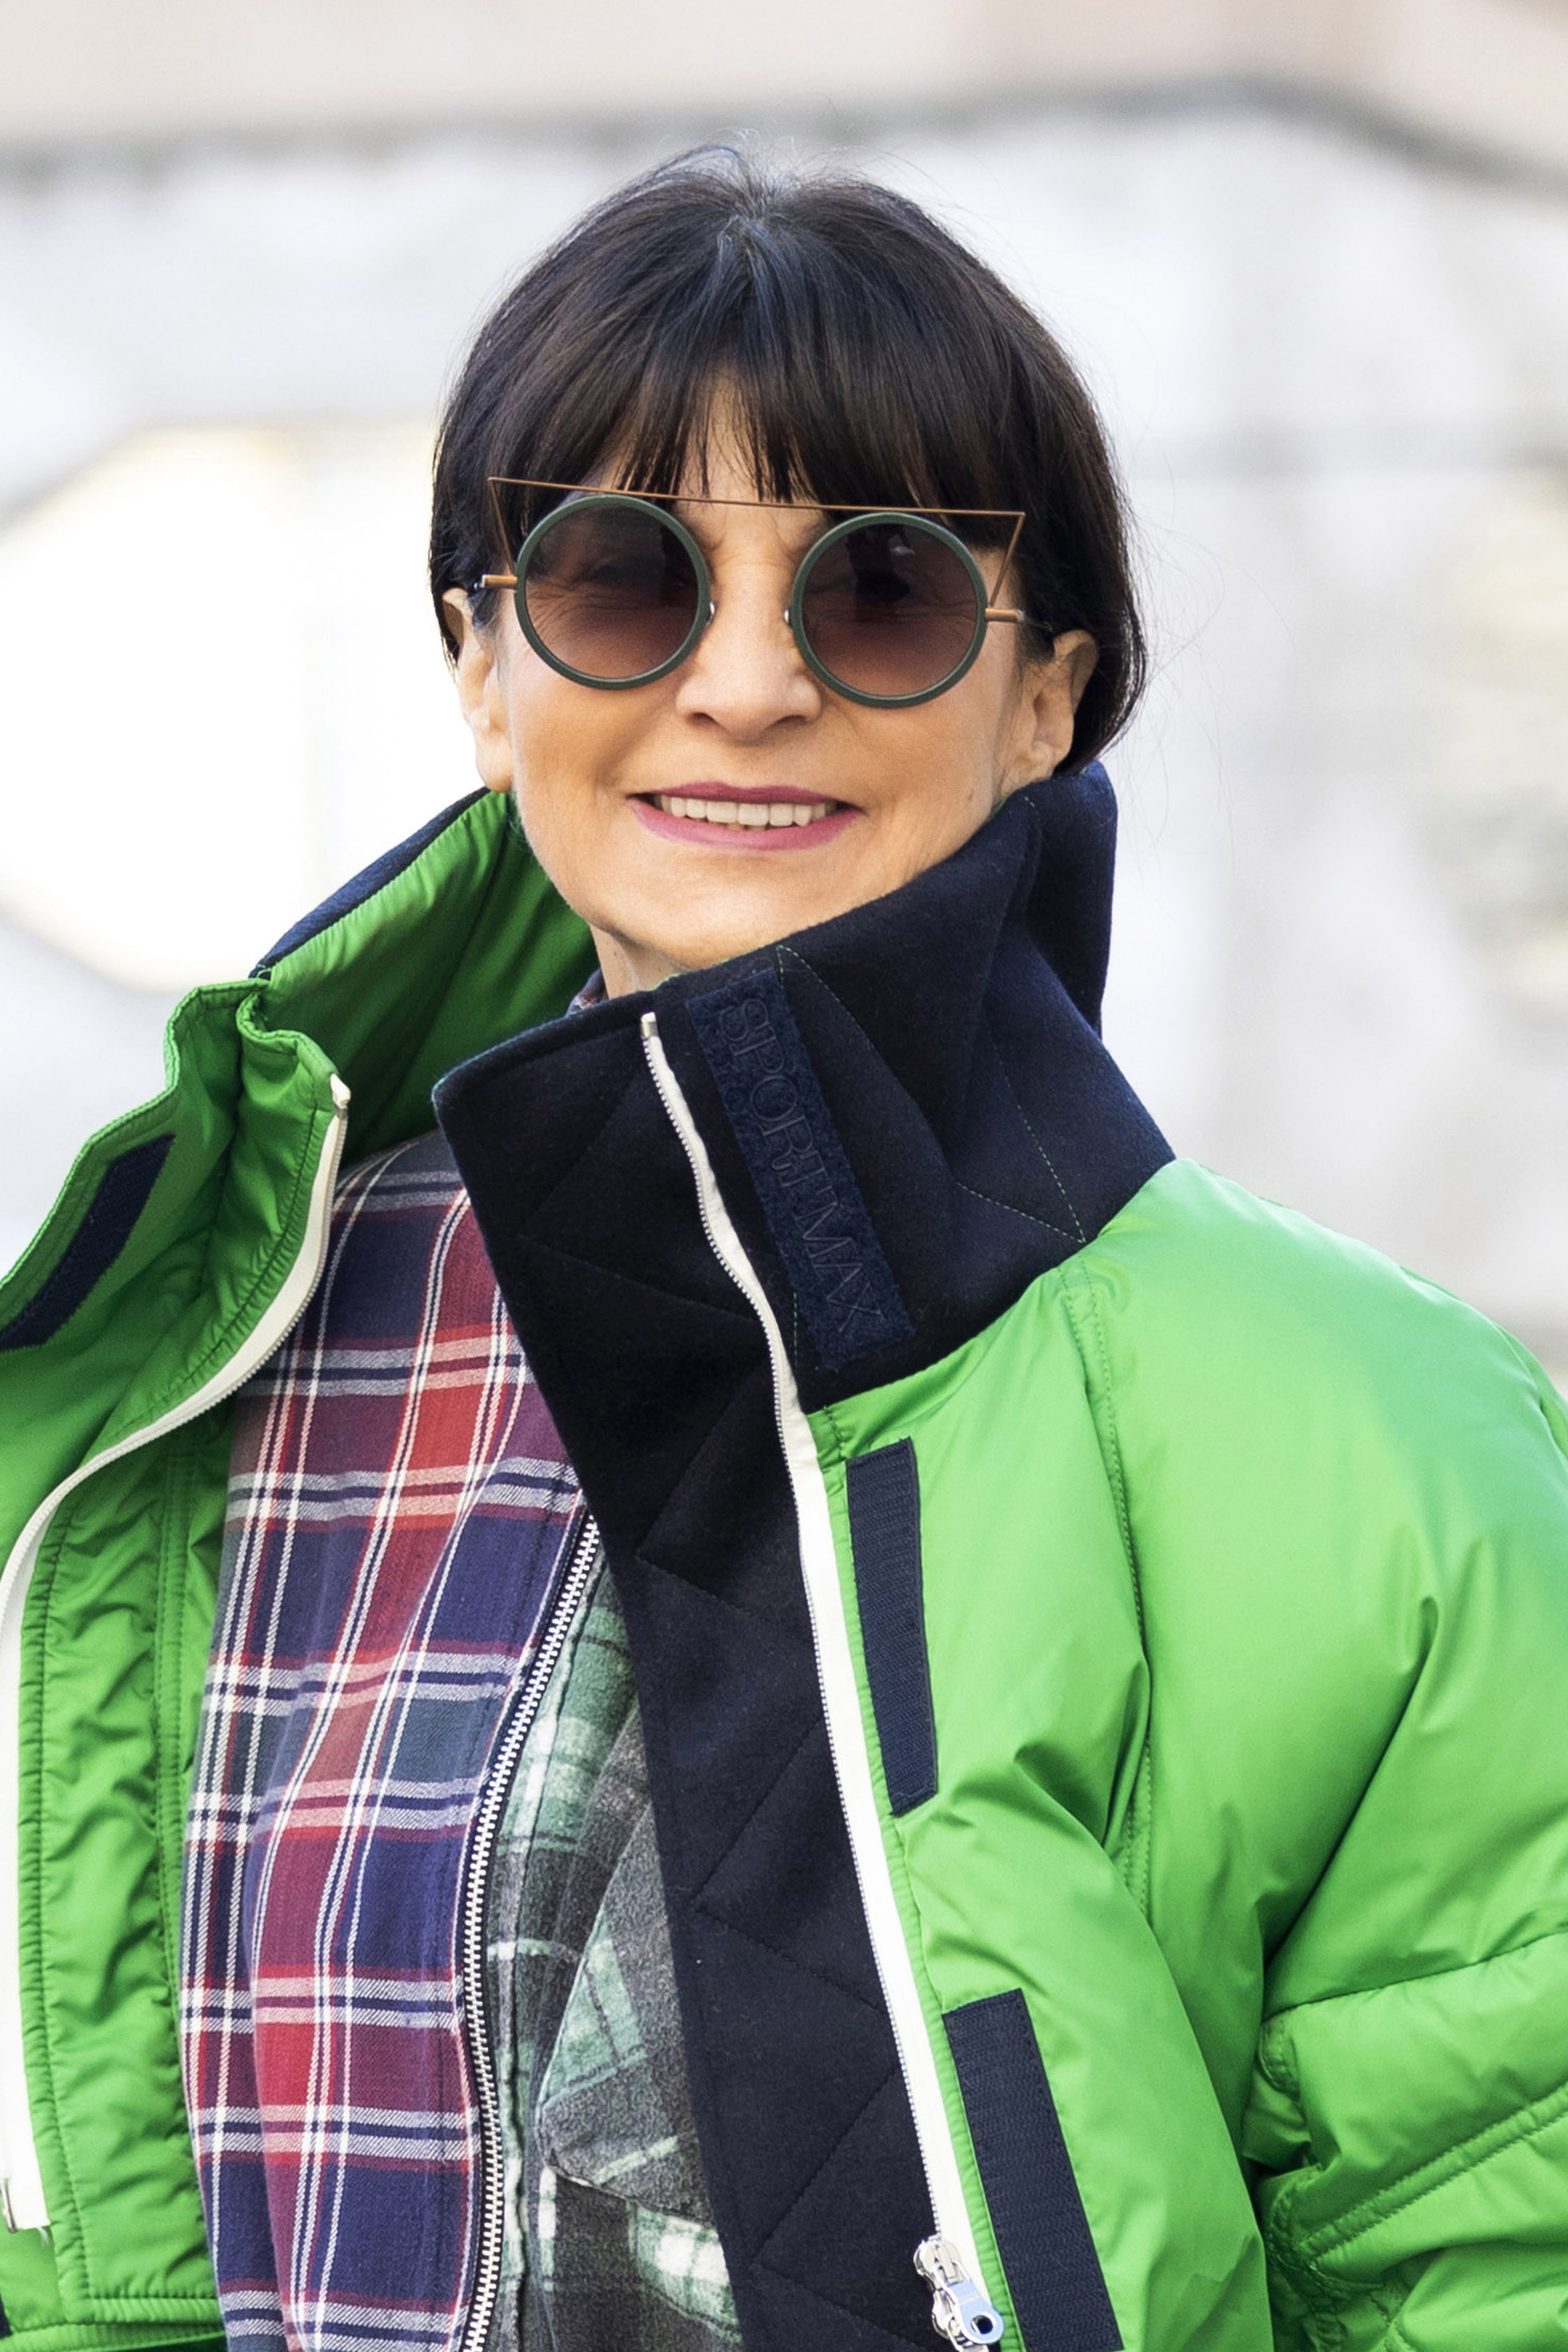 Matija Vuica istaknula se odabirom efektne jakne i torbe: 'Današnji dan je tražio malo boje, nonšalancije i jedan dobar osmijeh'